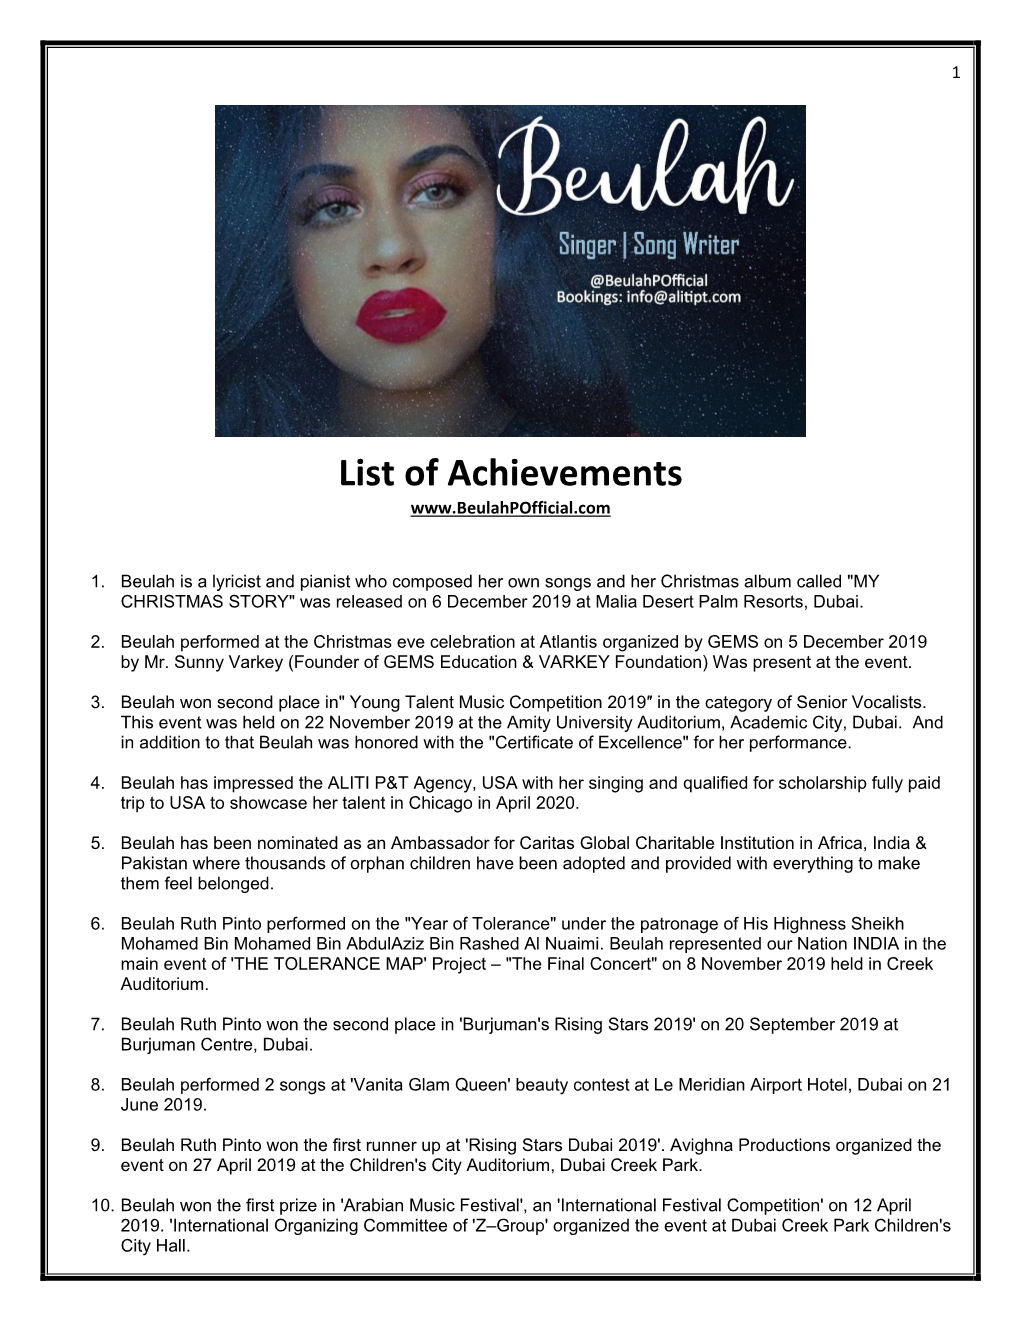 List of Achievements